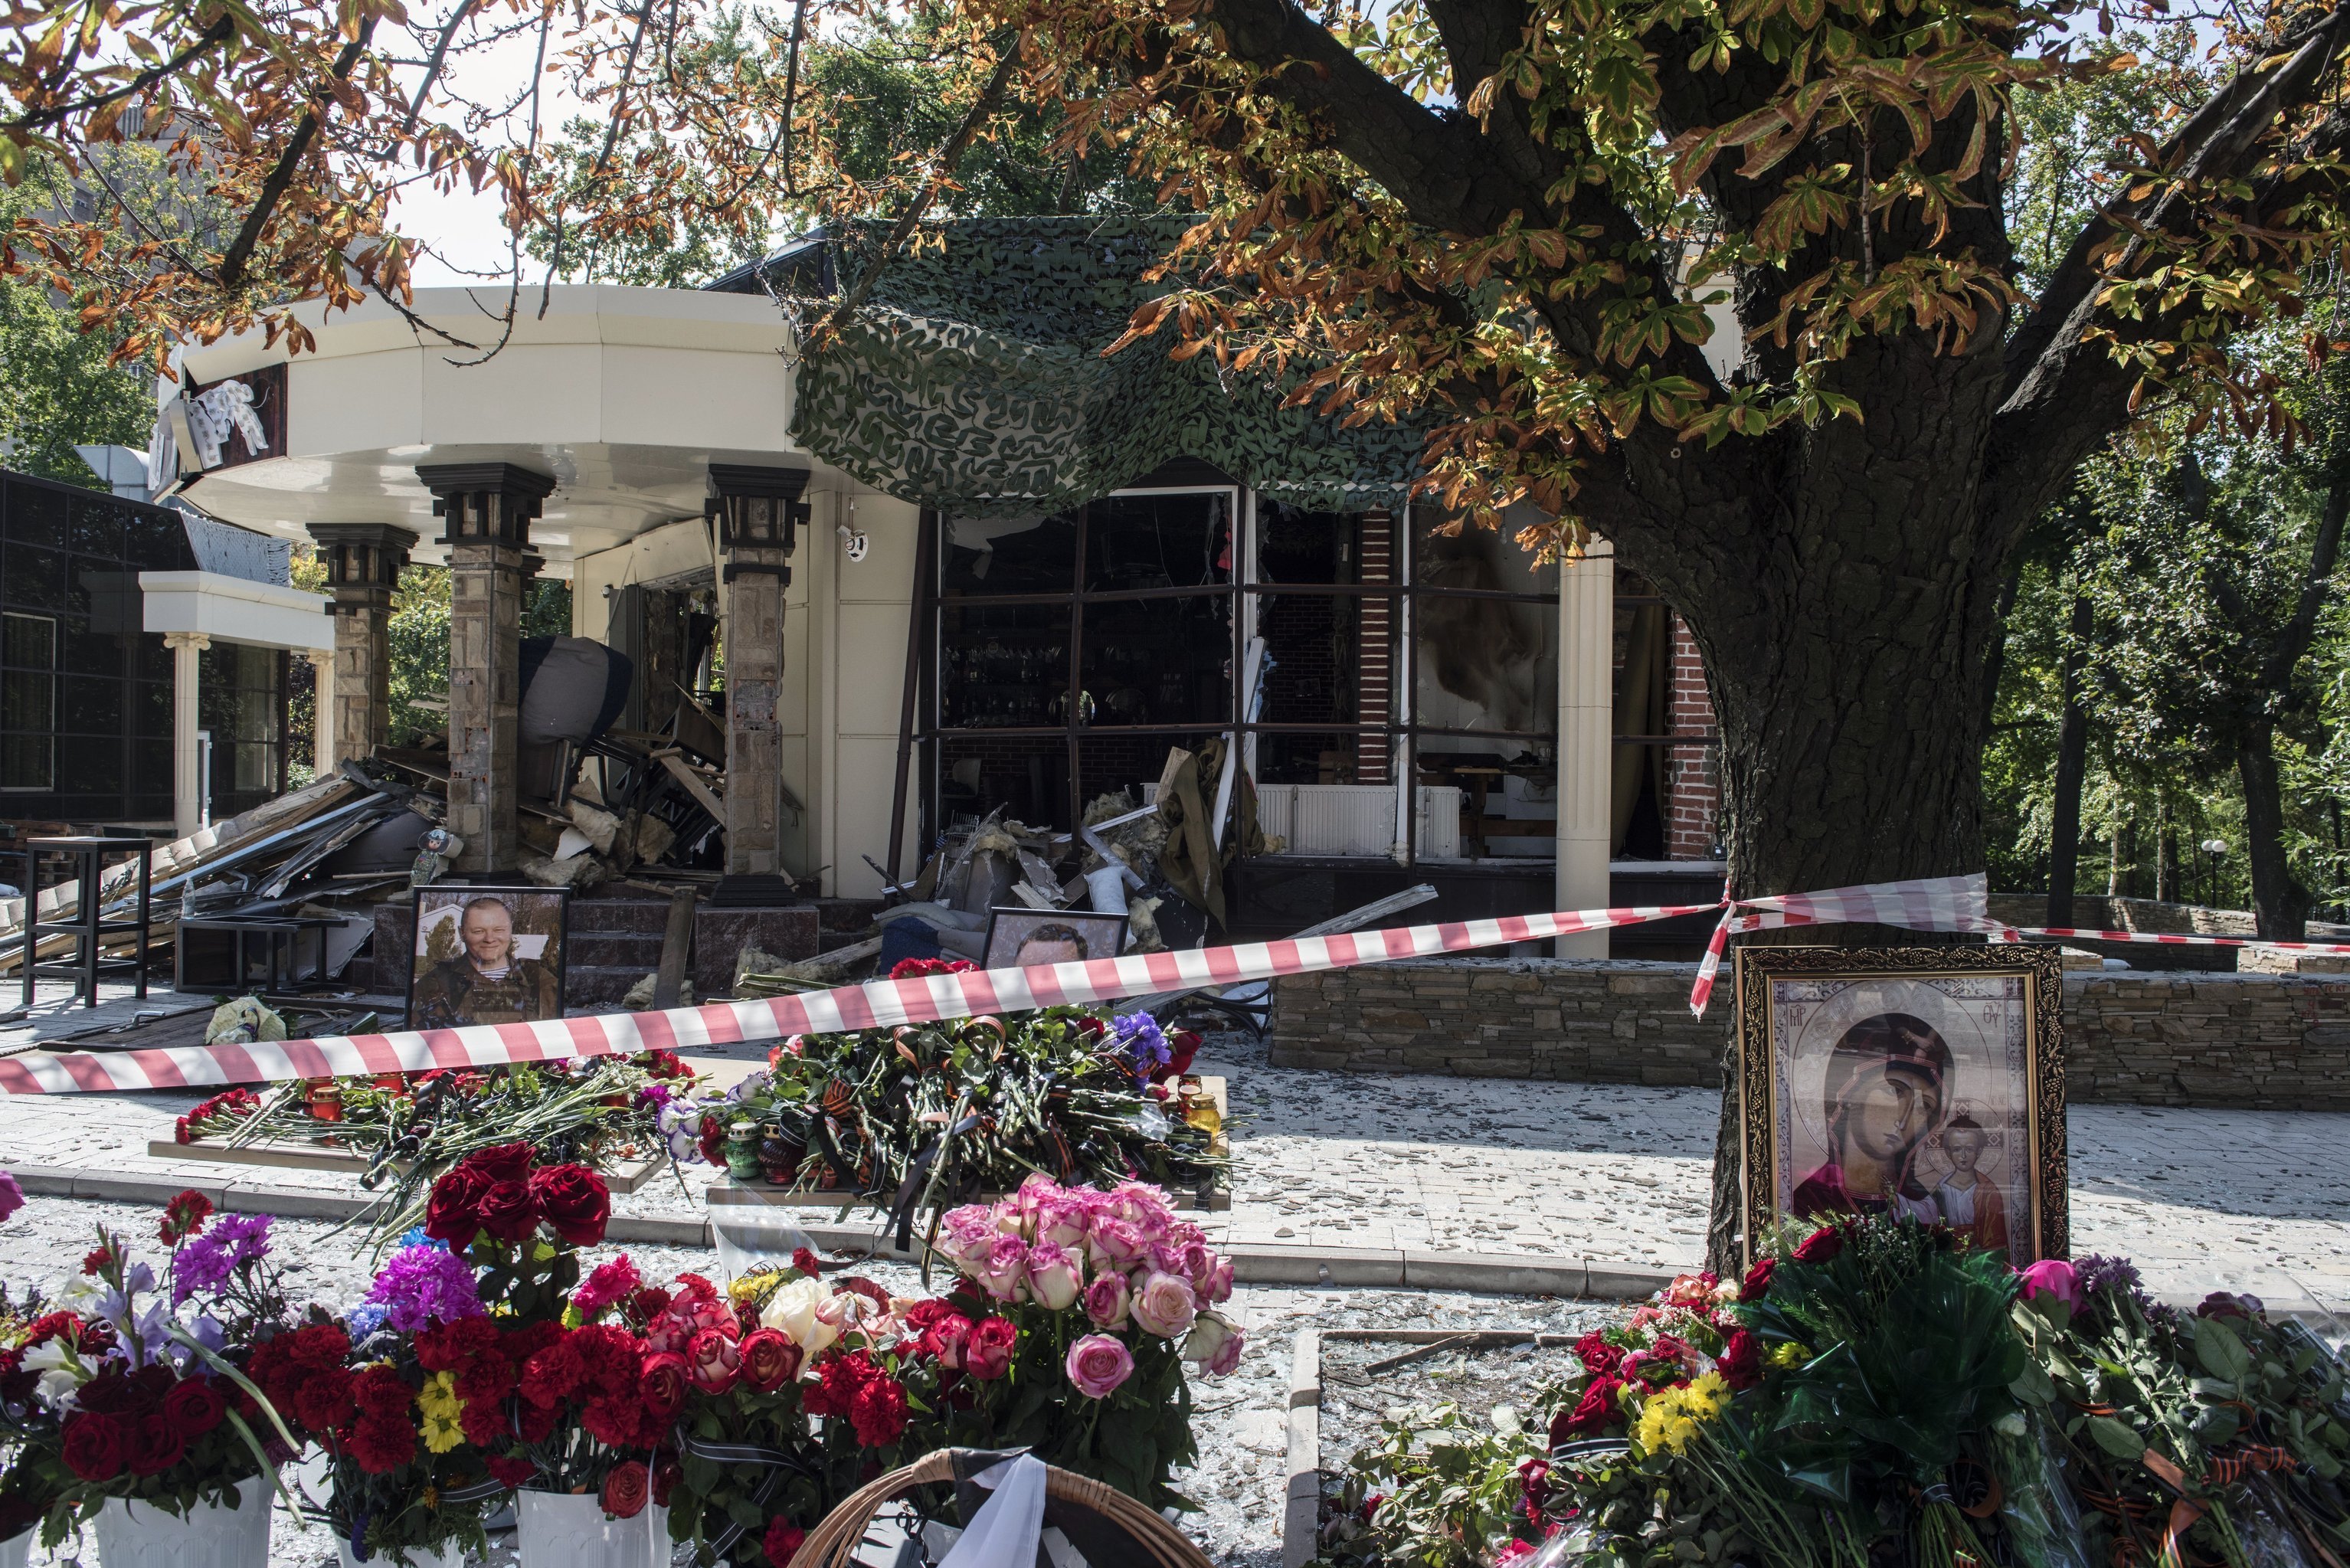 Цветы у здания кафе "Сепар" в Донецке, где произошел взрыв в результате которого погиб глава ДНР Александр Захарченко.